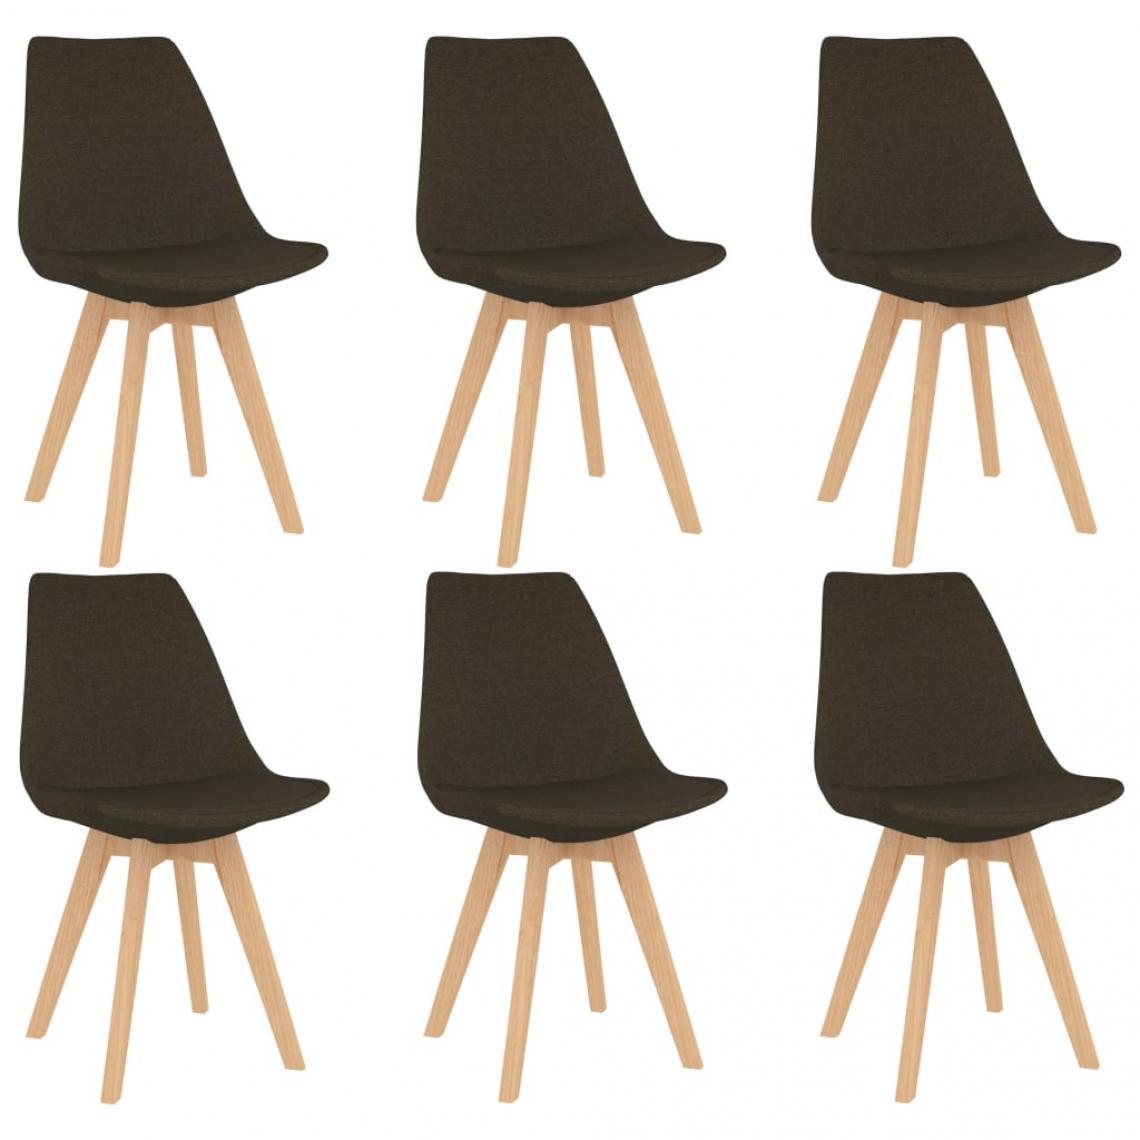 Decoshop26 - Lot de 6 chaises de salle à manger cuisine design moderne tissu marron foncé CDS022580 - Chaises